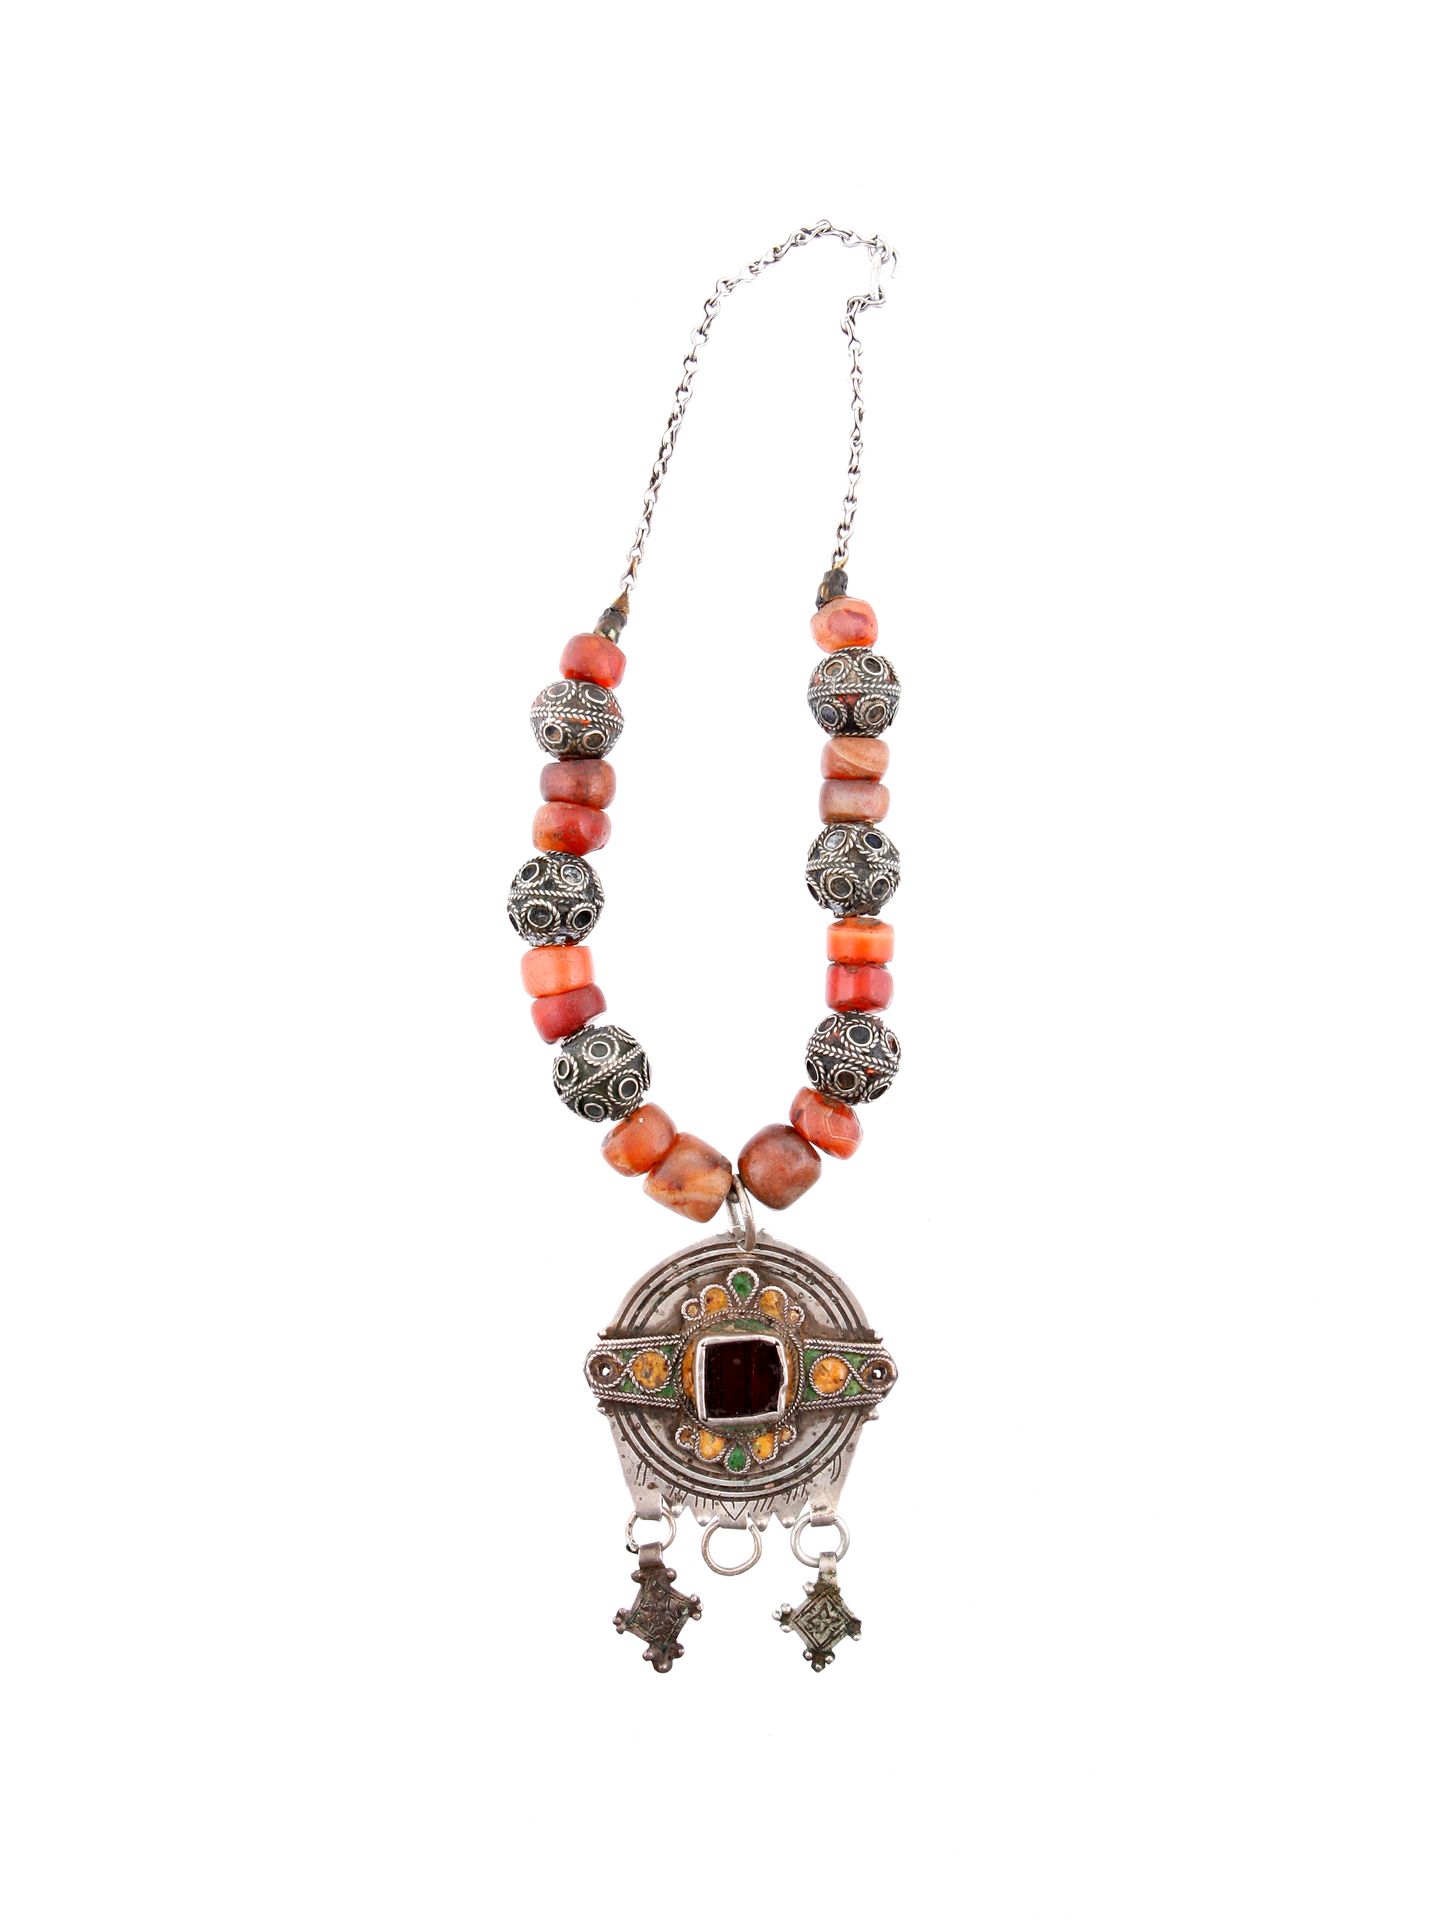 A Berber Necklace with a central Pendant Collar con colgante central de bisuterí&hellip;